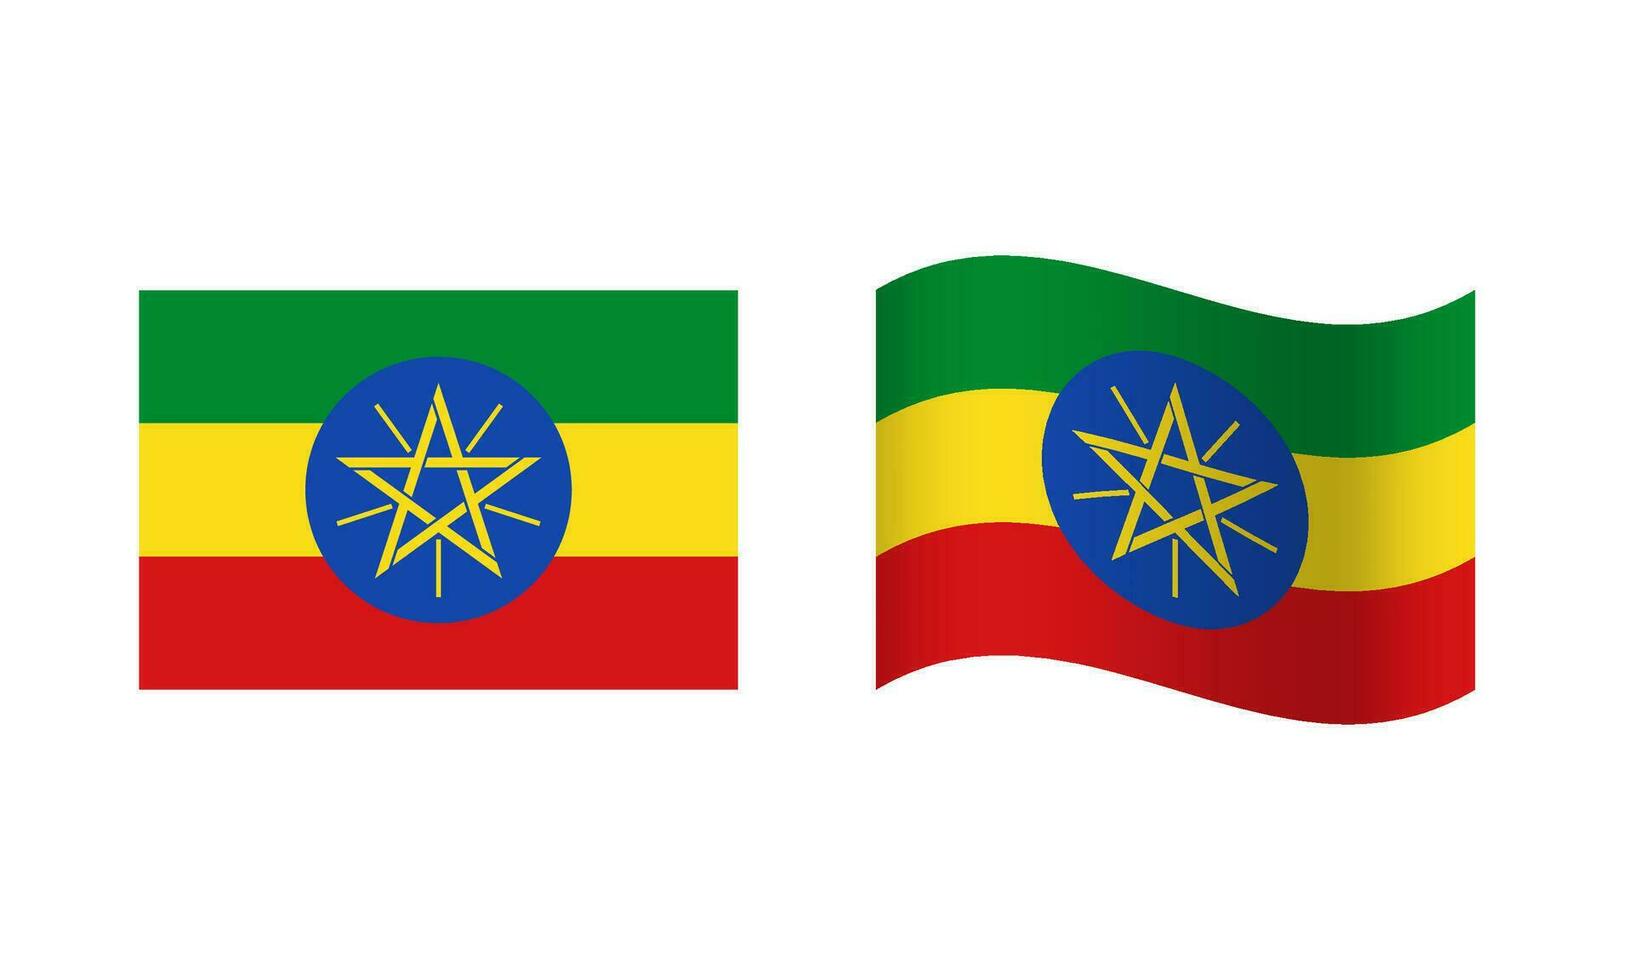 rektangel och Vinka etiopien flagga illustration vektor